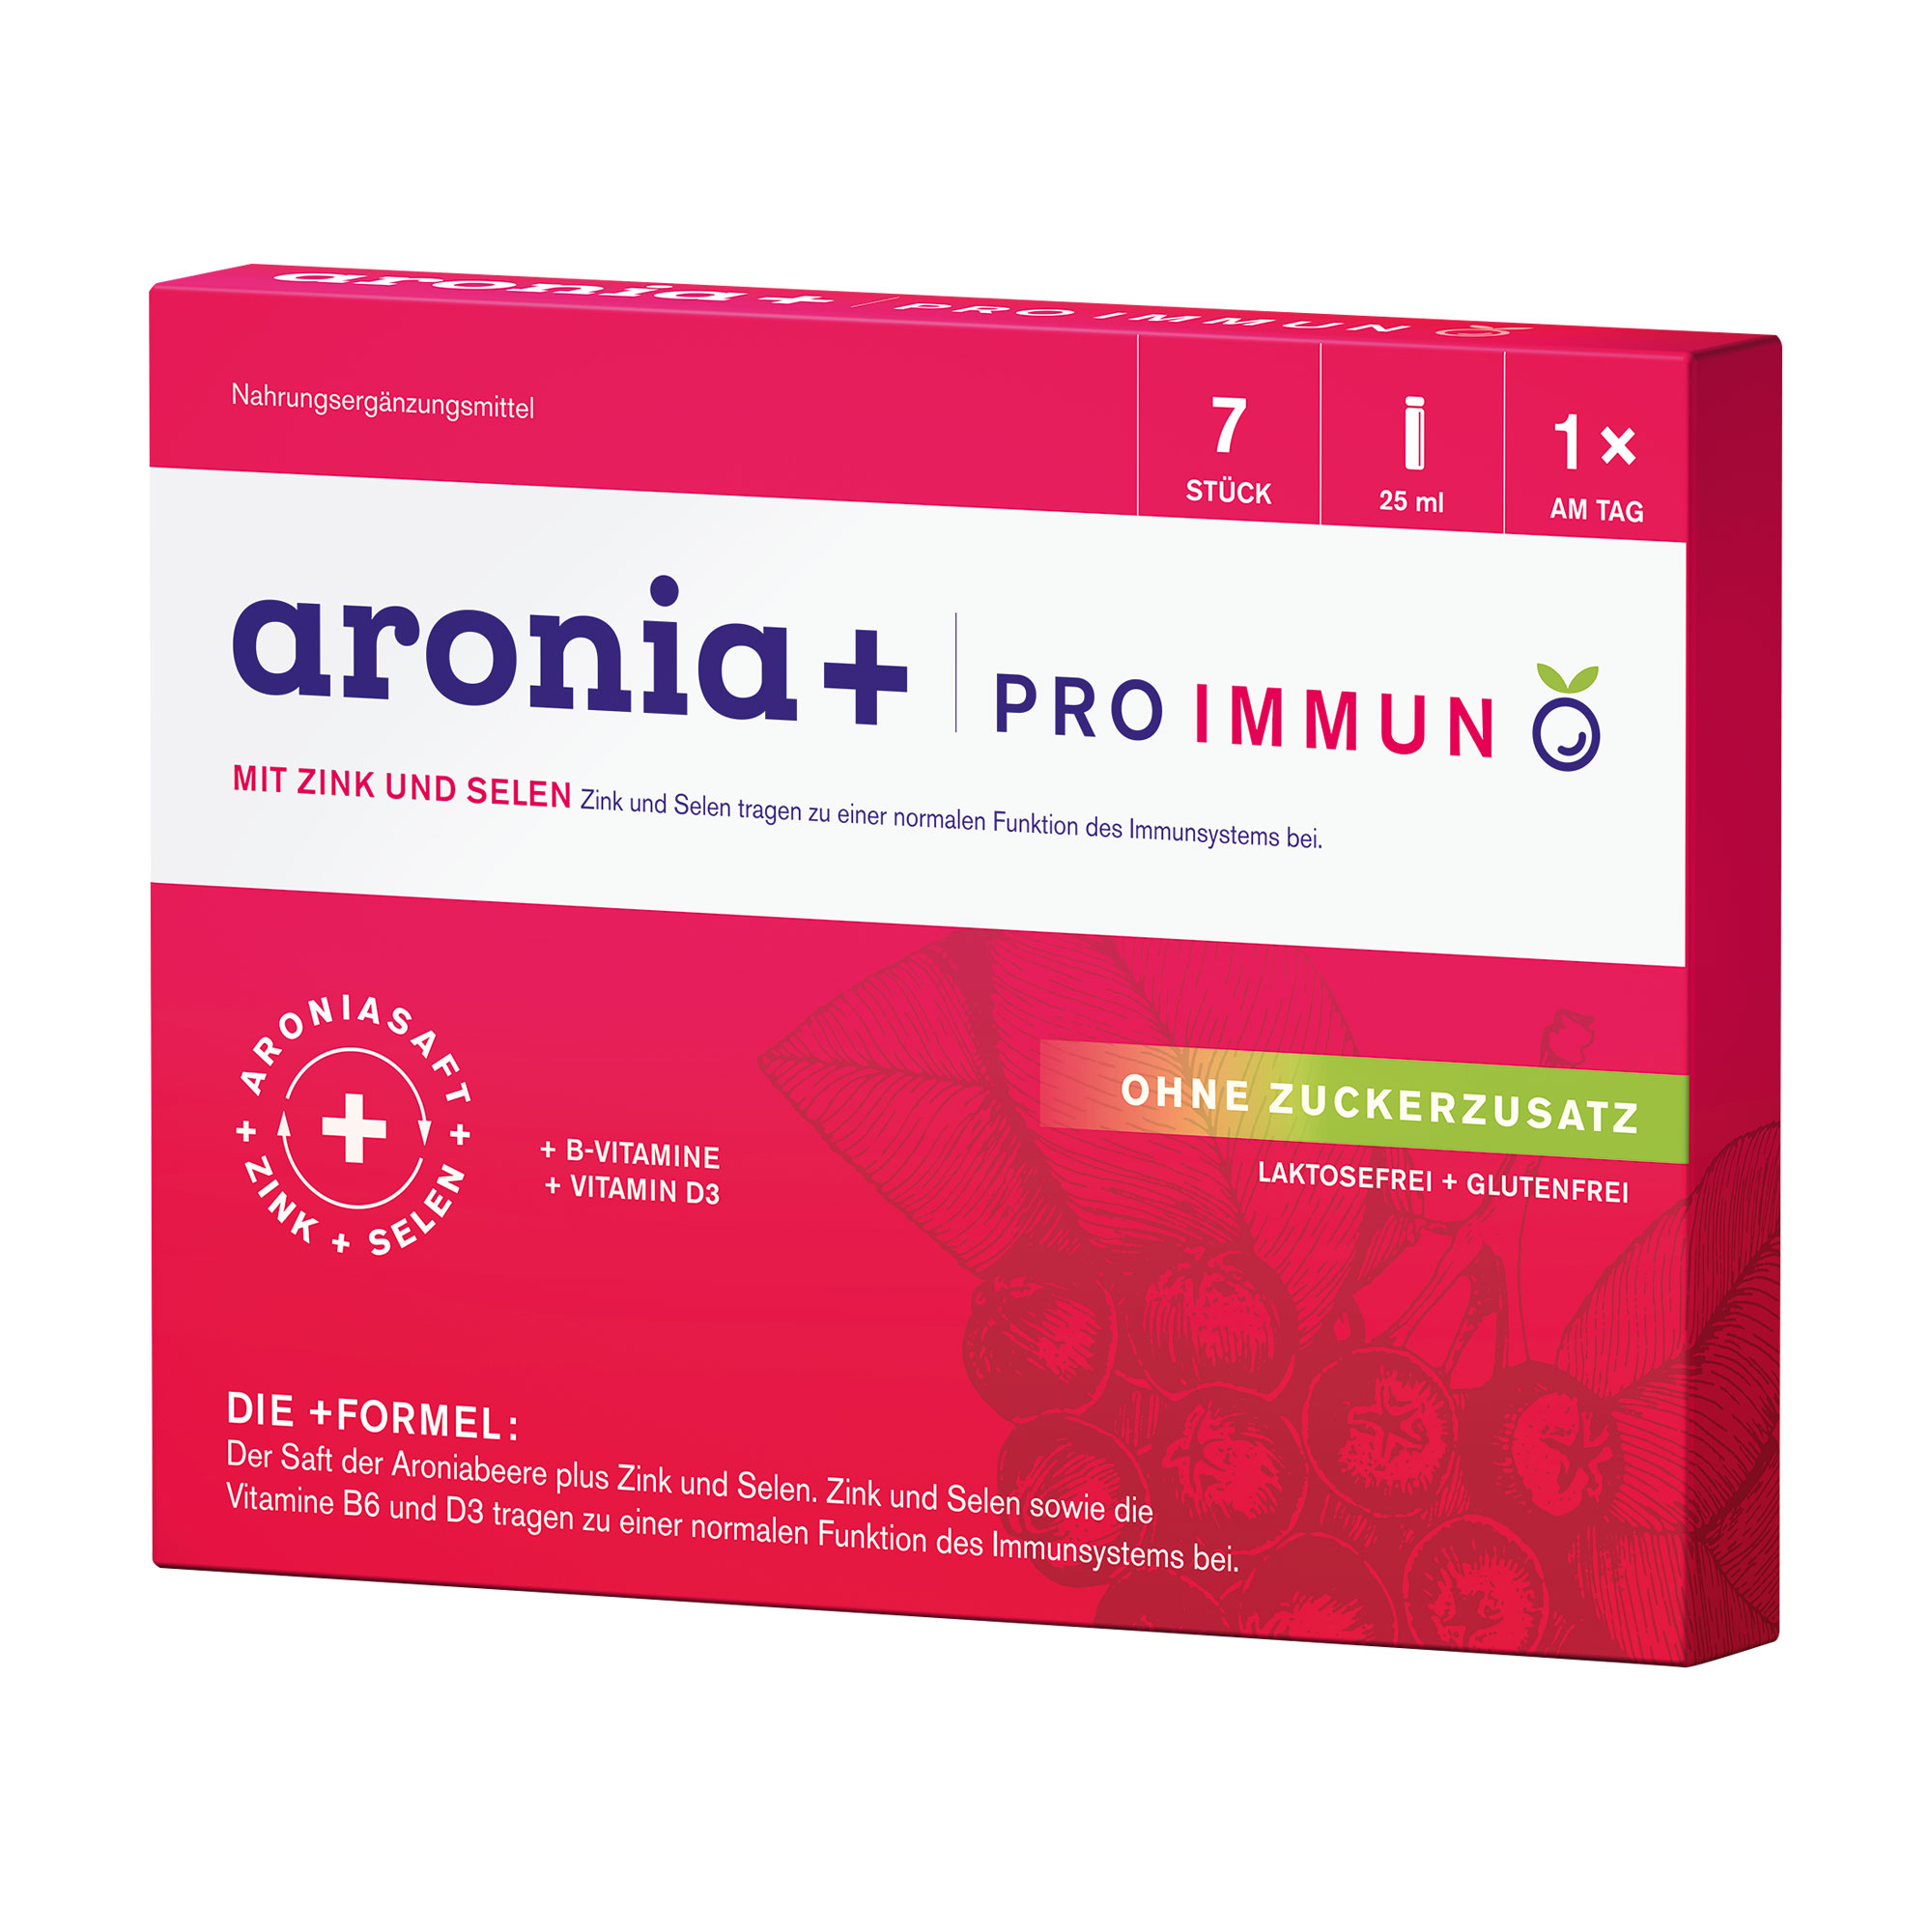 Nahrungsergänzungsmittel für Erwachsene mit Aronia, Zink und Selen sowie ausgewählten B-Vitaminen und Vitamin D3.